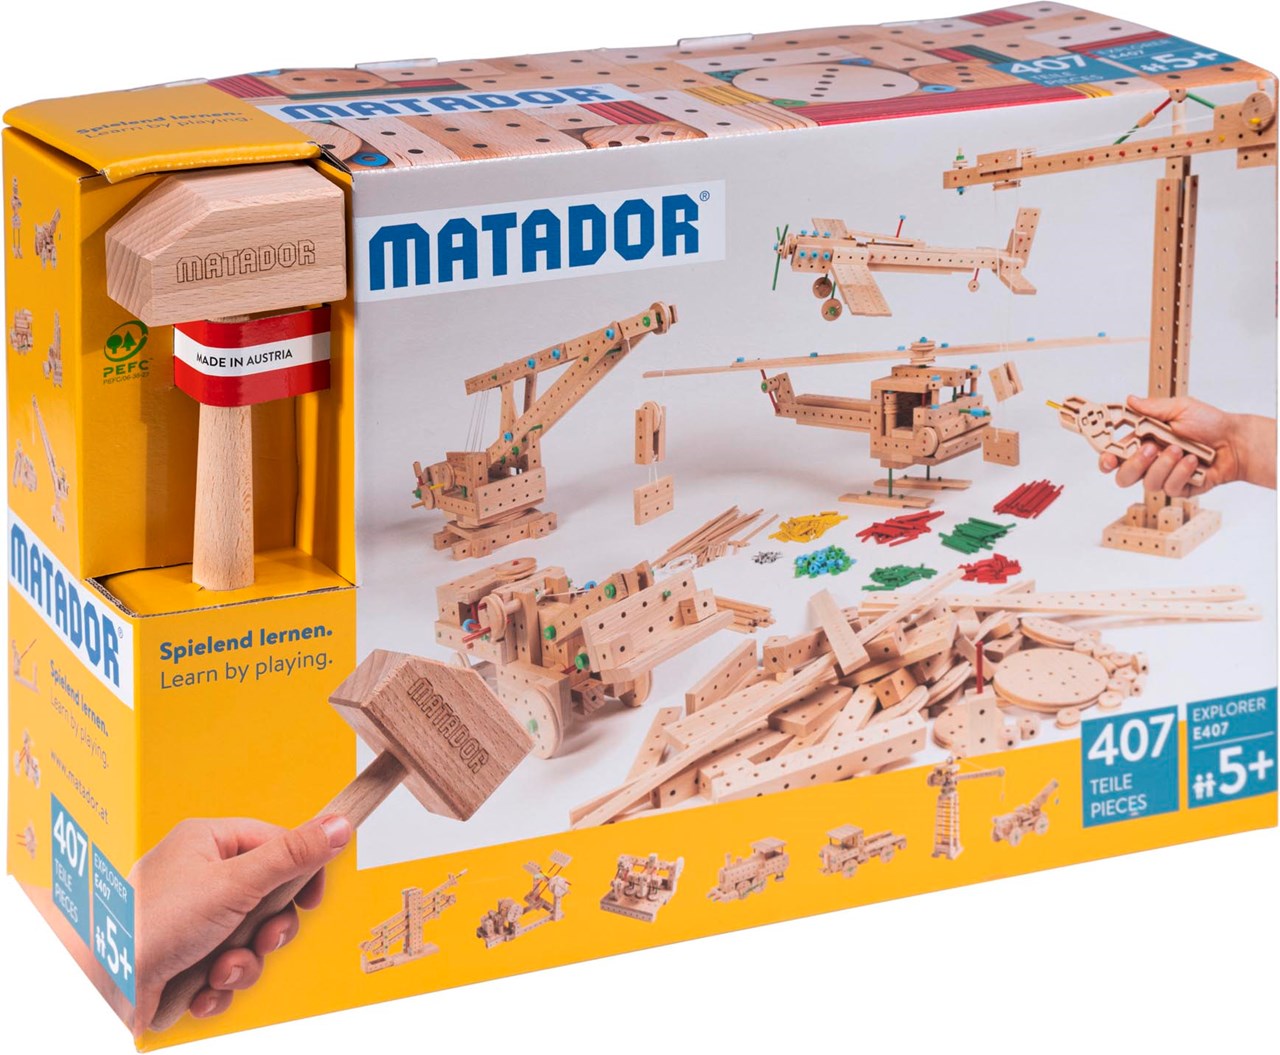 Matador Spielwaren GmbH Produkt-Beispiele Explorer E407